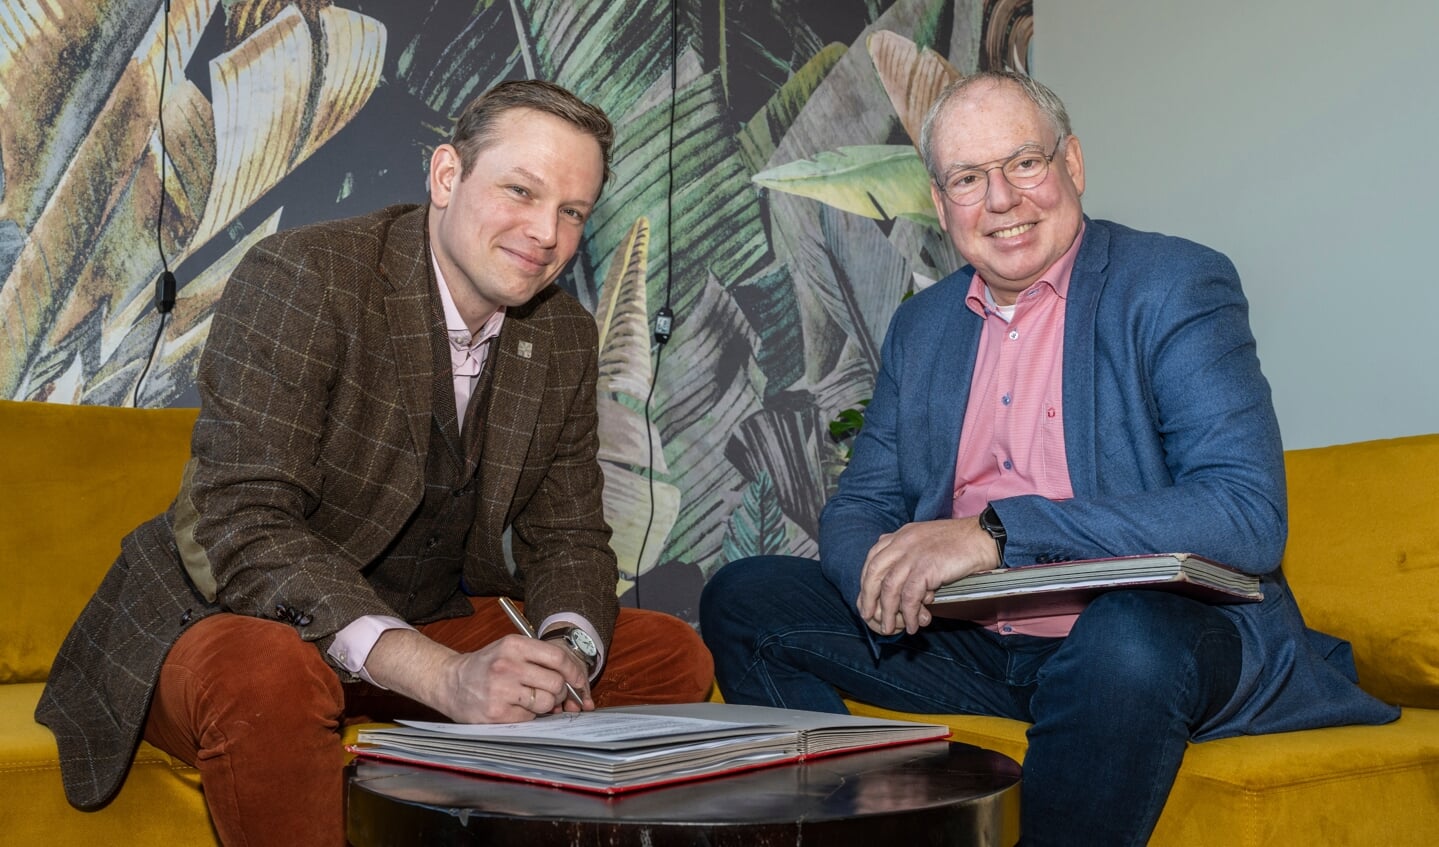 Wethouder Bob Vastenhoud (links) en directeur-bestuurder Chètien Mommers van Rijnhart Wonen ondertekenen de overeenkomst voor de herontwikkeling van de Pinksterbloem.   